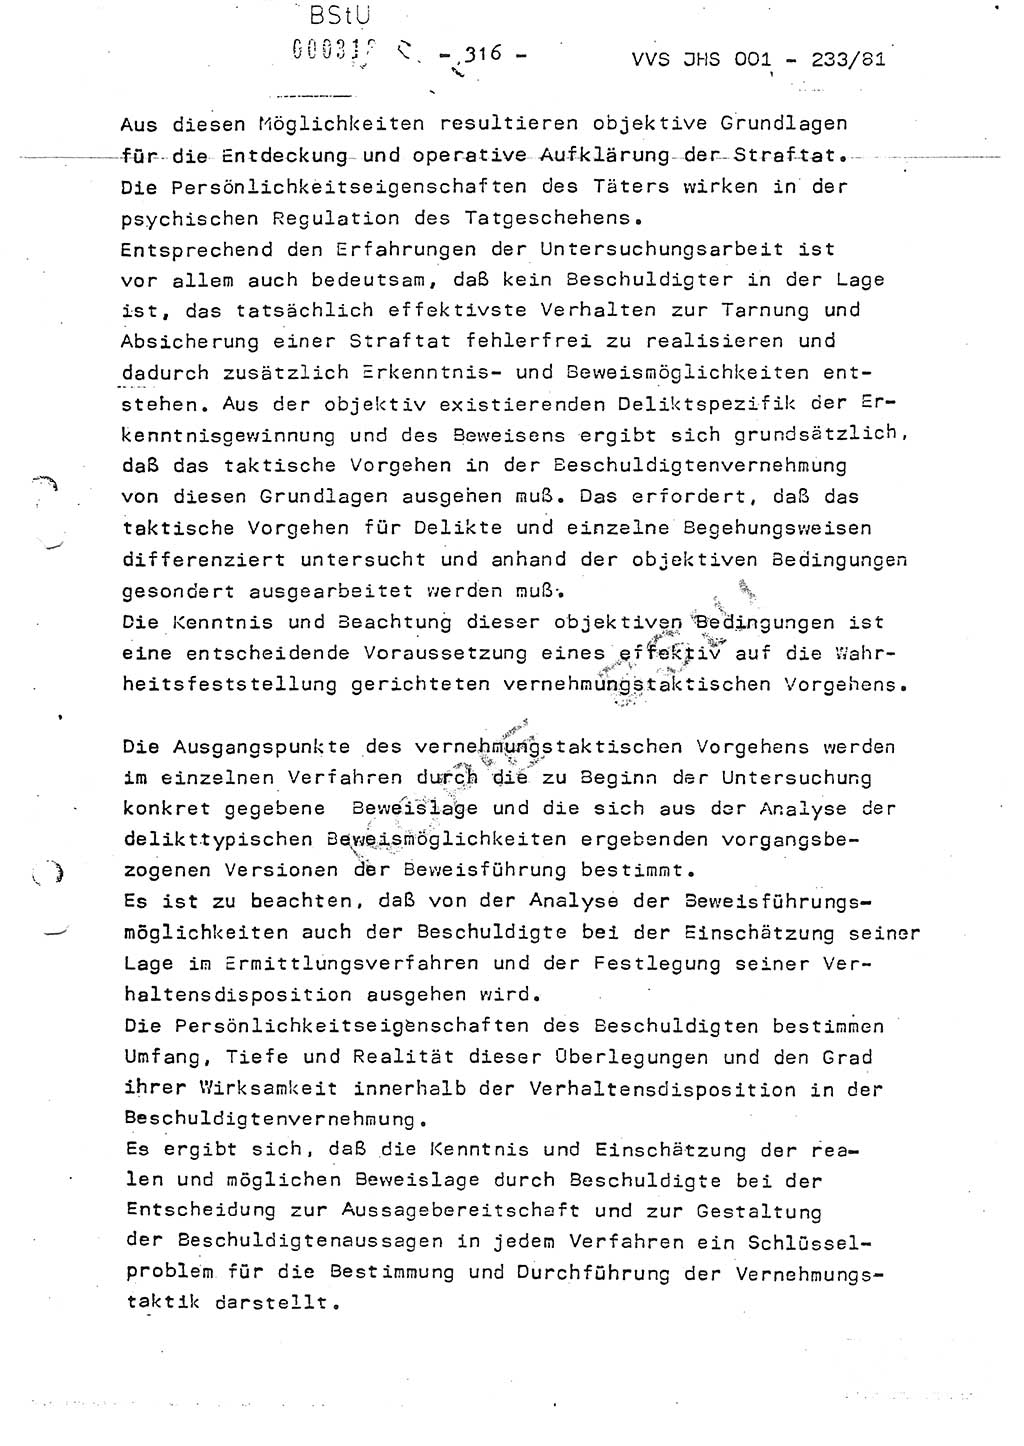 Dissertation Oberstleutnant Horst Zank (JHS), Oberstleutnant Dr. Karl-Heinz Knoblauch (JHS), Oberstleutnant Gustav-Adolf Kowalewski (HA Ⅸ), Oberstleutnant Wolfgang Plötner (HA Ⅸ), Ministerium für Staatssicherheit (MfS) [Deutsche Demokratische Republik (DDR)], Juristische Hochschule (JHS), Vertrauliche Verschlußsache (VVS) o001-233/81, Potsdam 1981, Blatt 316 (Diss. MfS DDR JHS VVS o001-233/81 1981, Bl. 316)